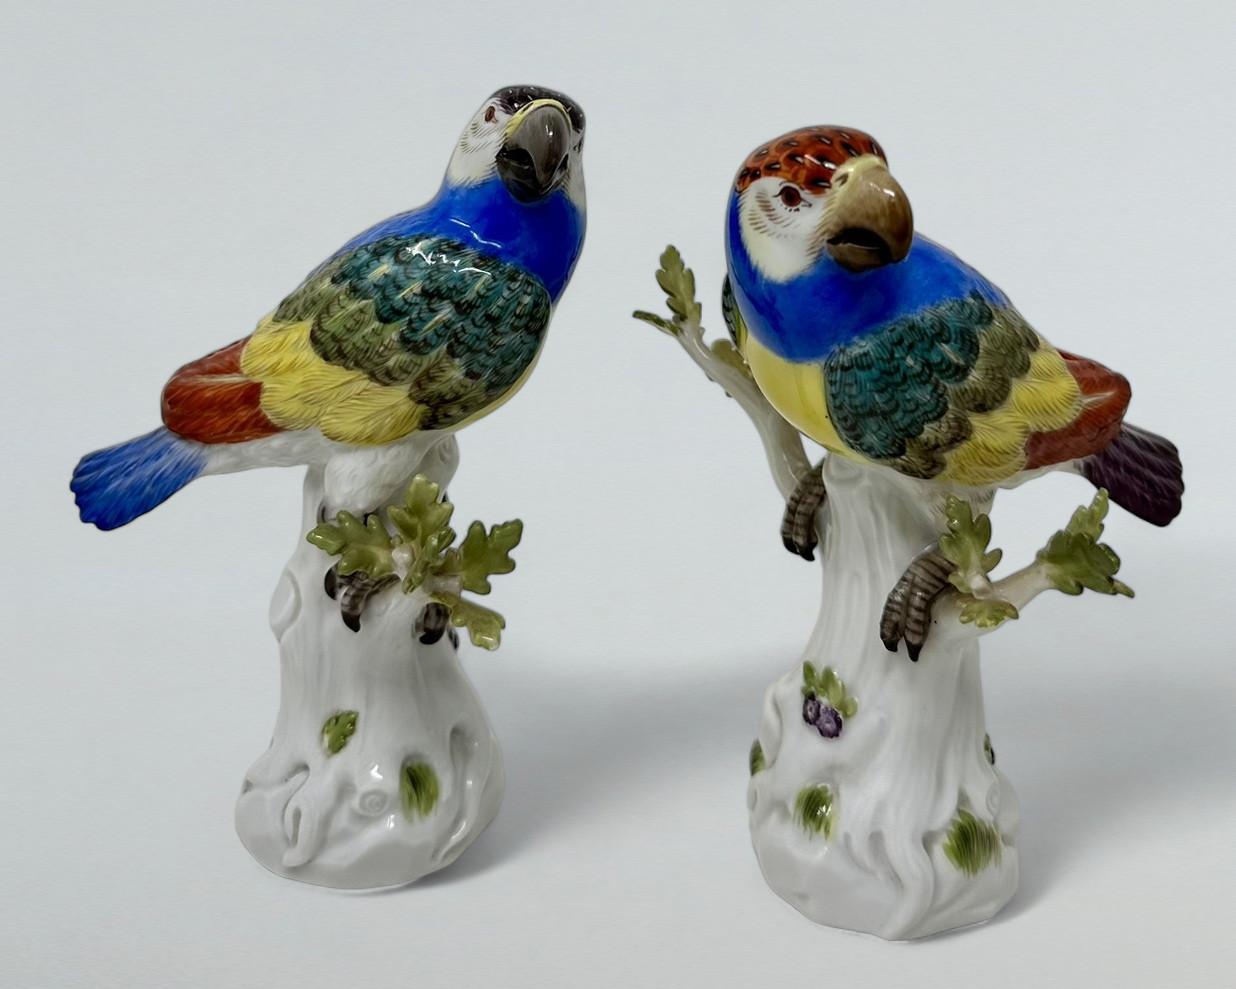 Très élégante paire de perroquets en porcelaine émaillée de Meissen, de qualité exceptionnelle, du dernier quart du XIXe siècle. 

Chacun d'entre eux est modélisé de manière naturaliste et perché sur des souches d'arbres avec des pousses de